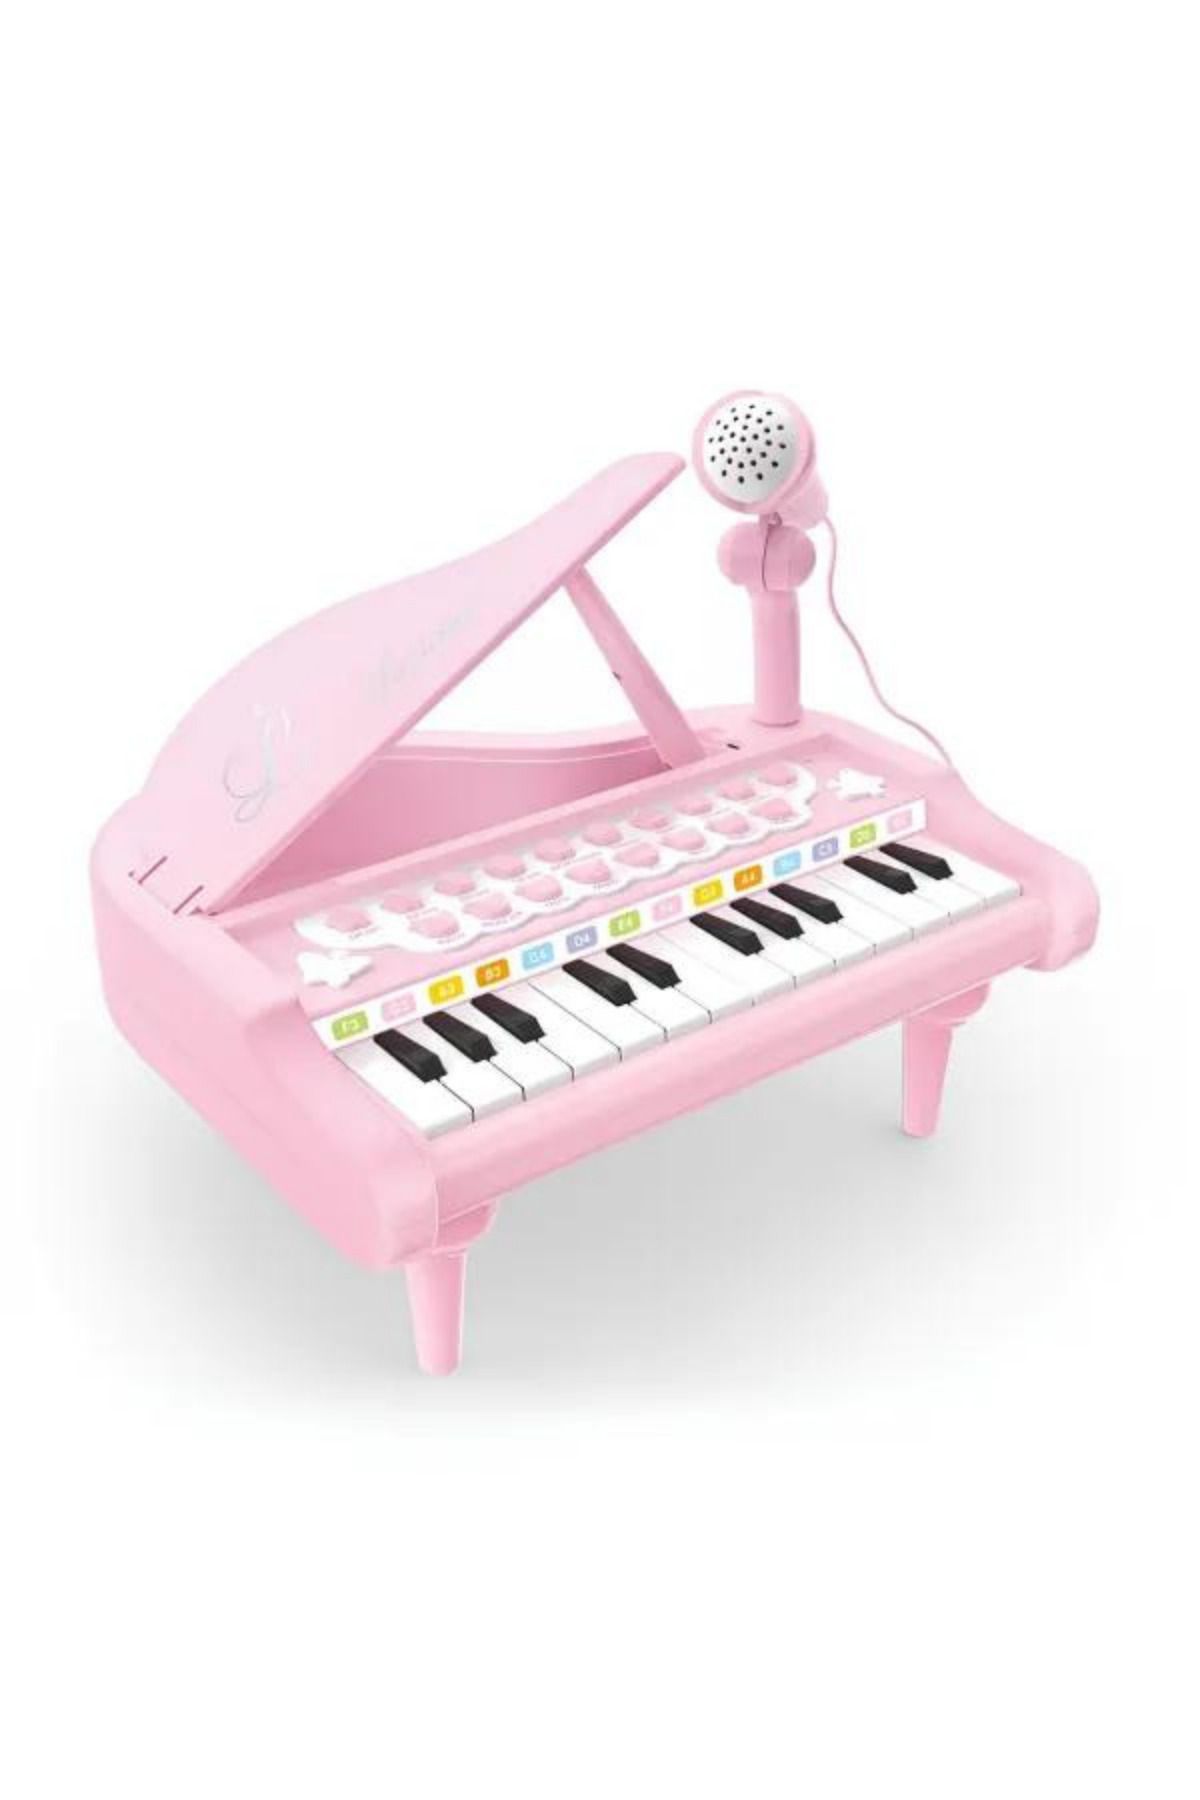 welcomein Oyuncak Mp3 Çalar Özellikli 24 Tuşlu Mikrofonlu Mini Piyano